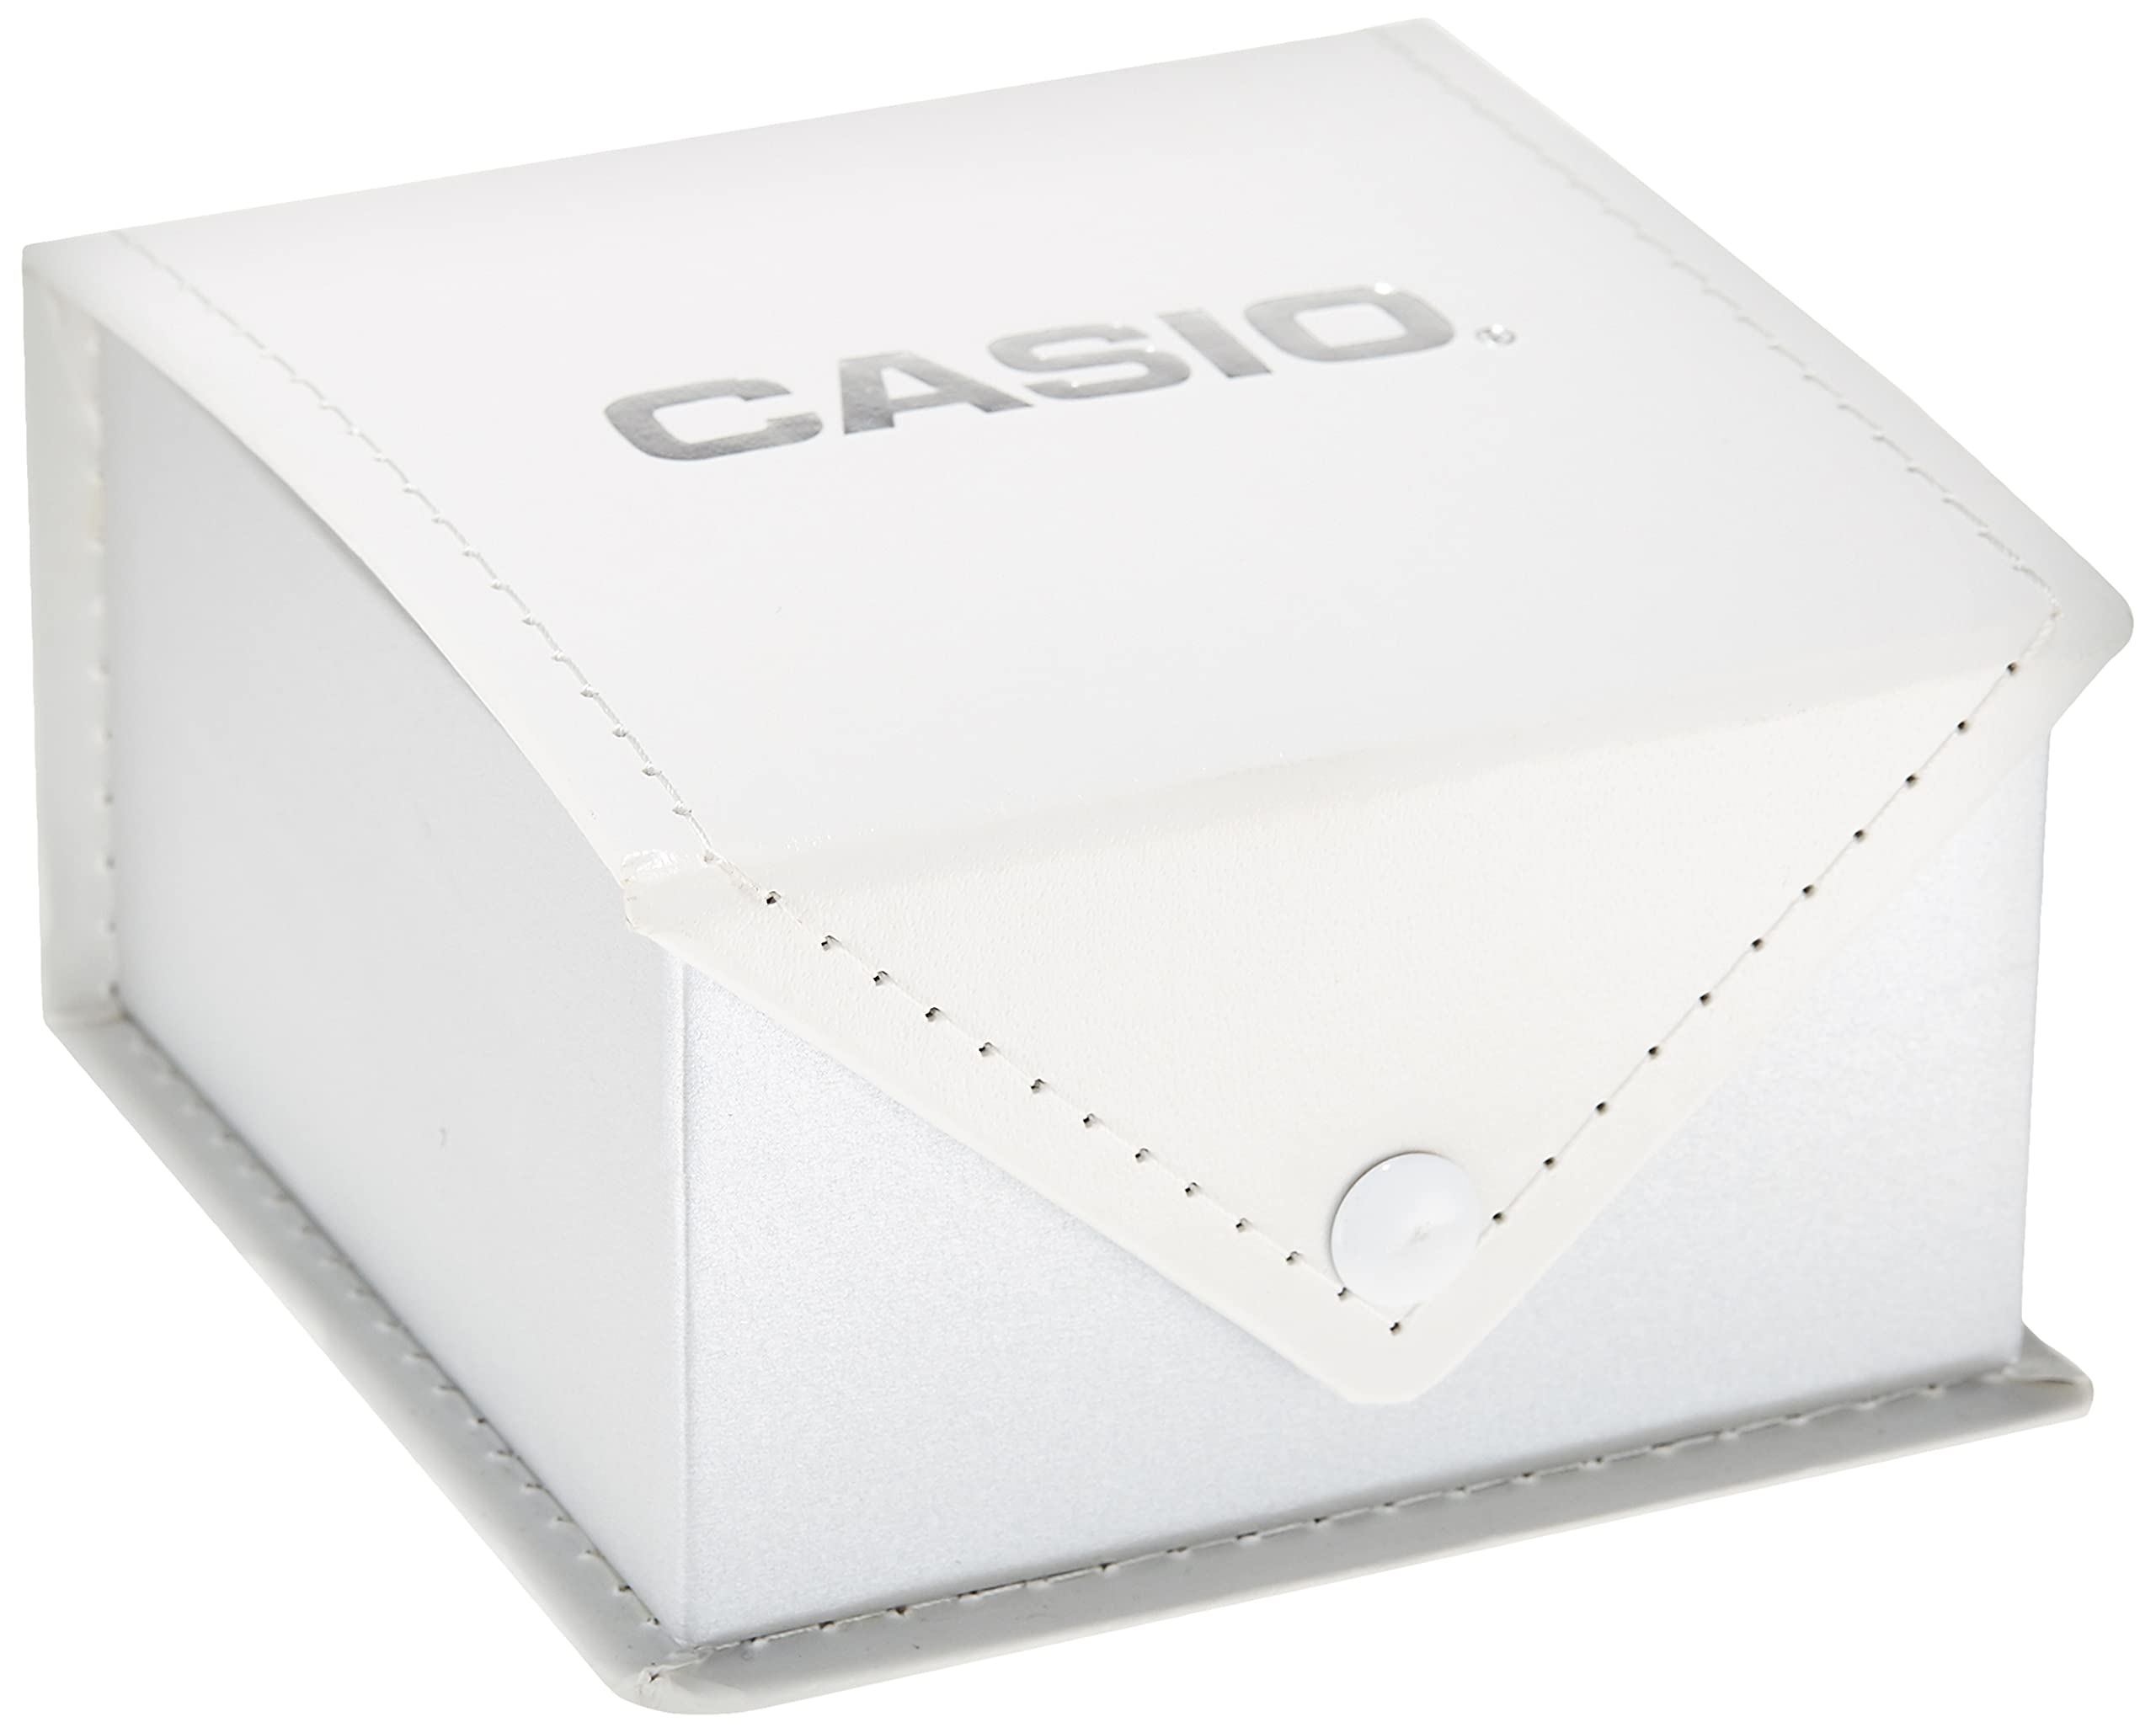 Casio F-91W-3Dg Men's Digital Multi-Function Black Rubber Watch